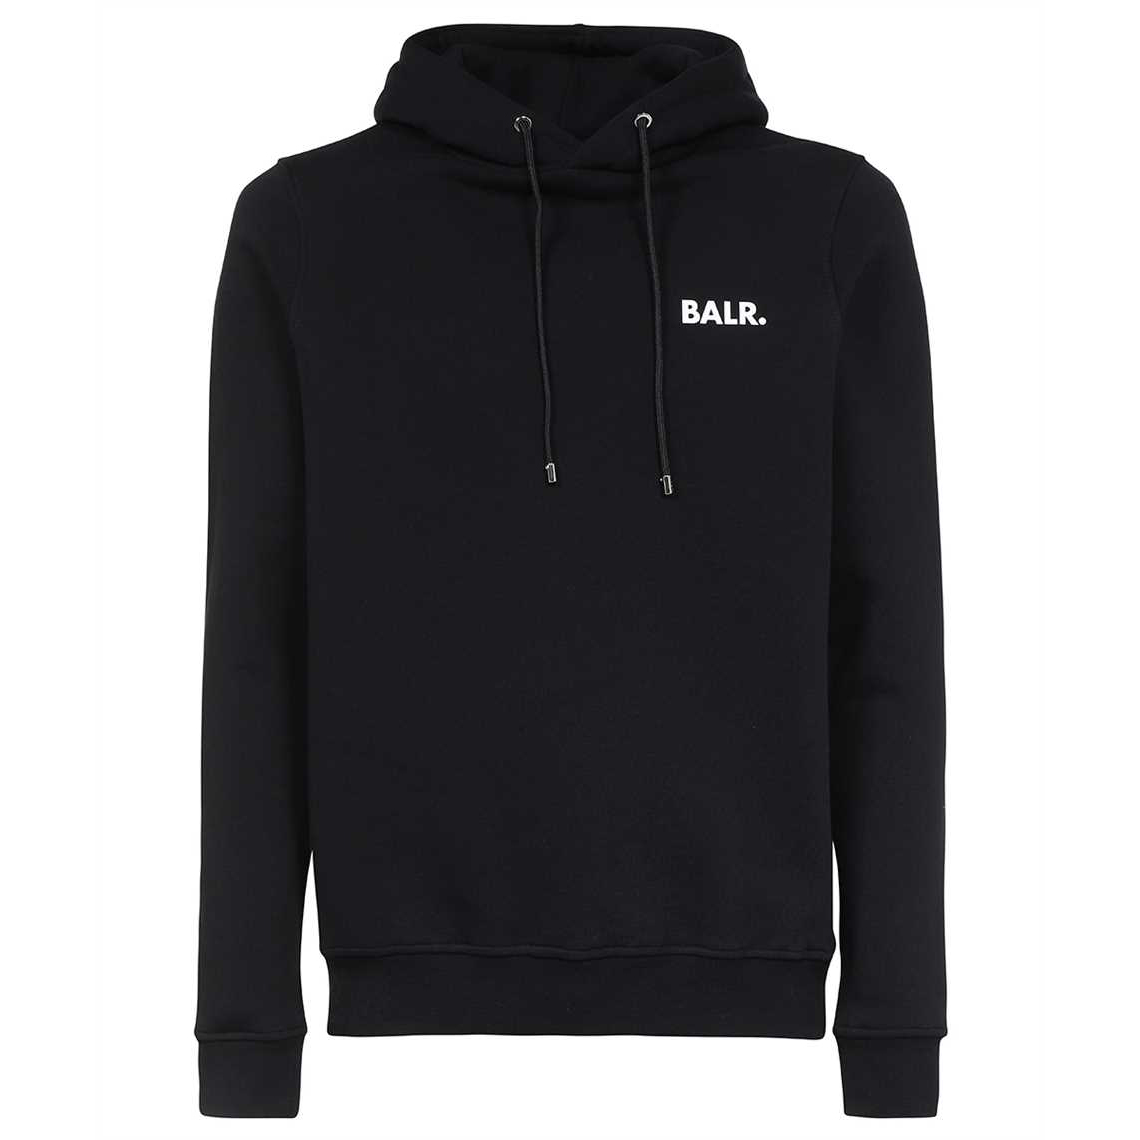 Afbeelding van BALR. Brand straight hoodie